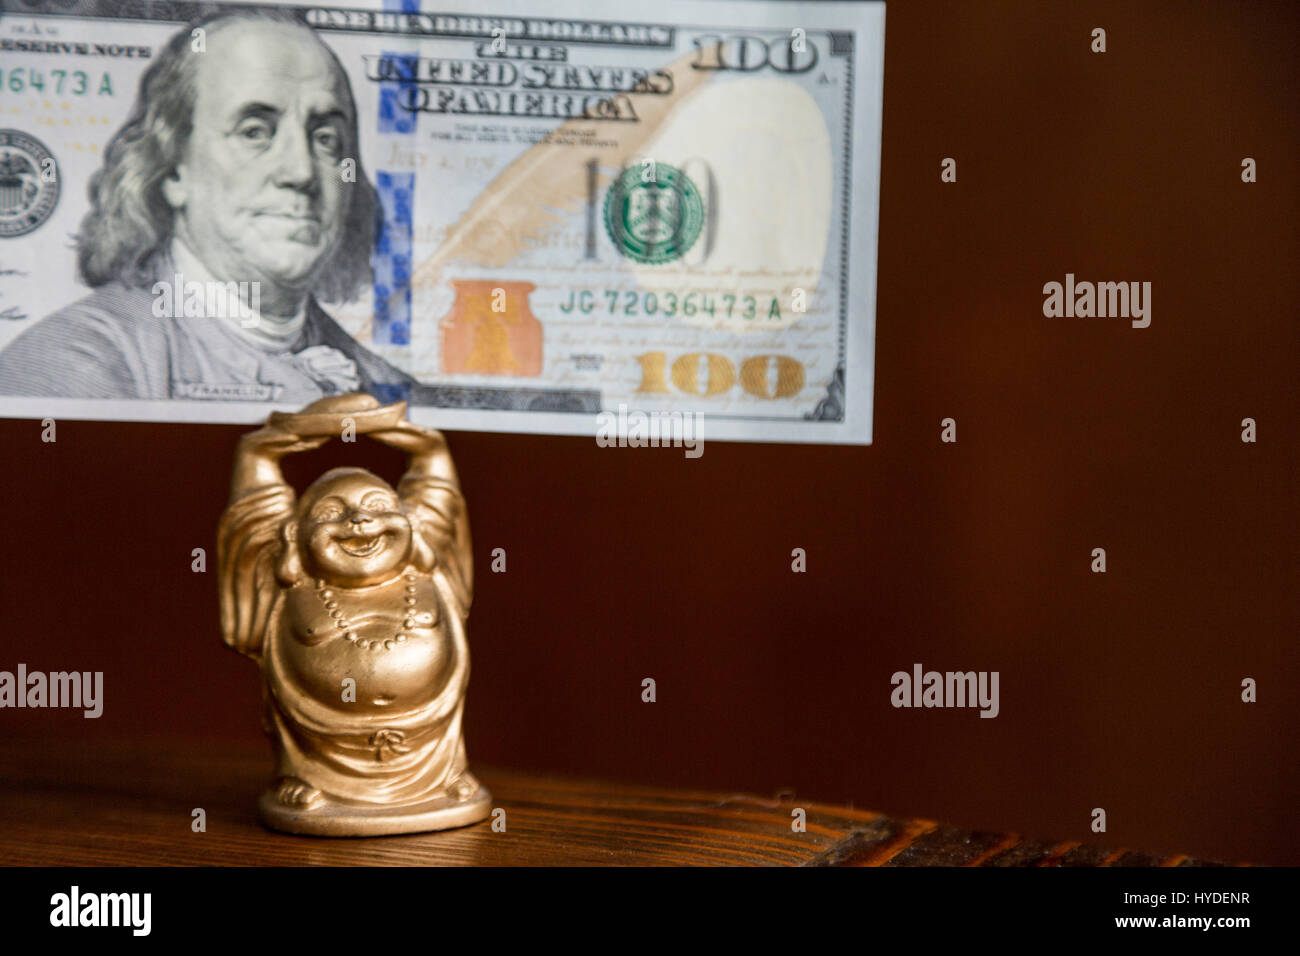 Una pequeña figurita de buda de oro tiene un billete de cien dólares en moneda de los Estados Unidos por encima de su cabeza Foto de stock